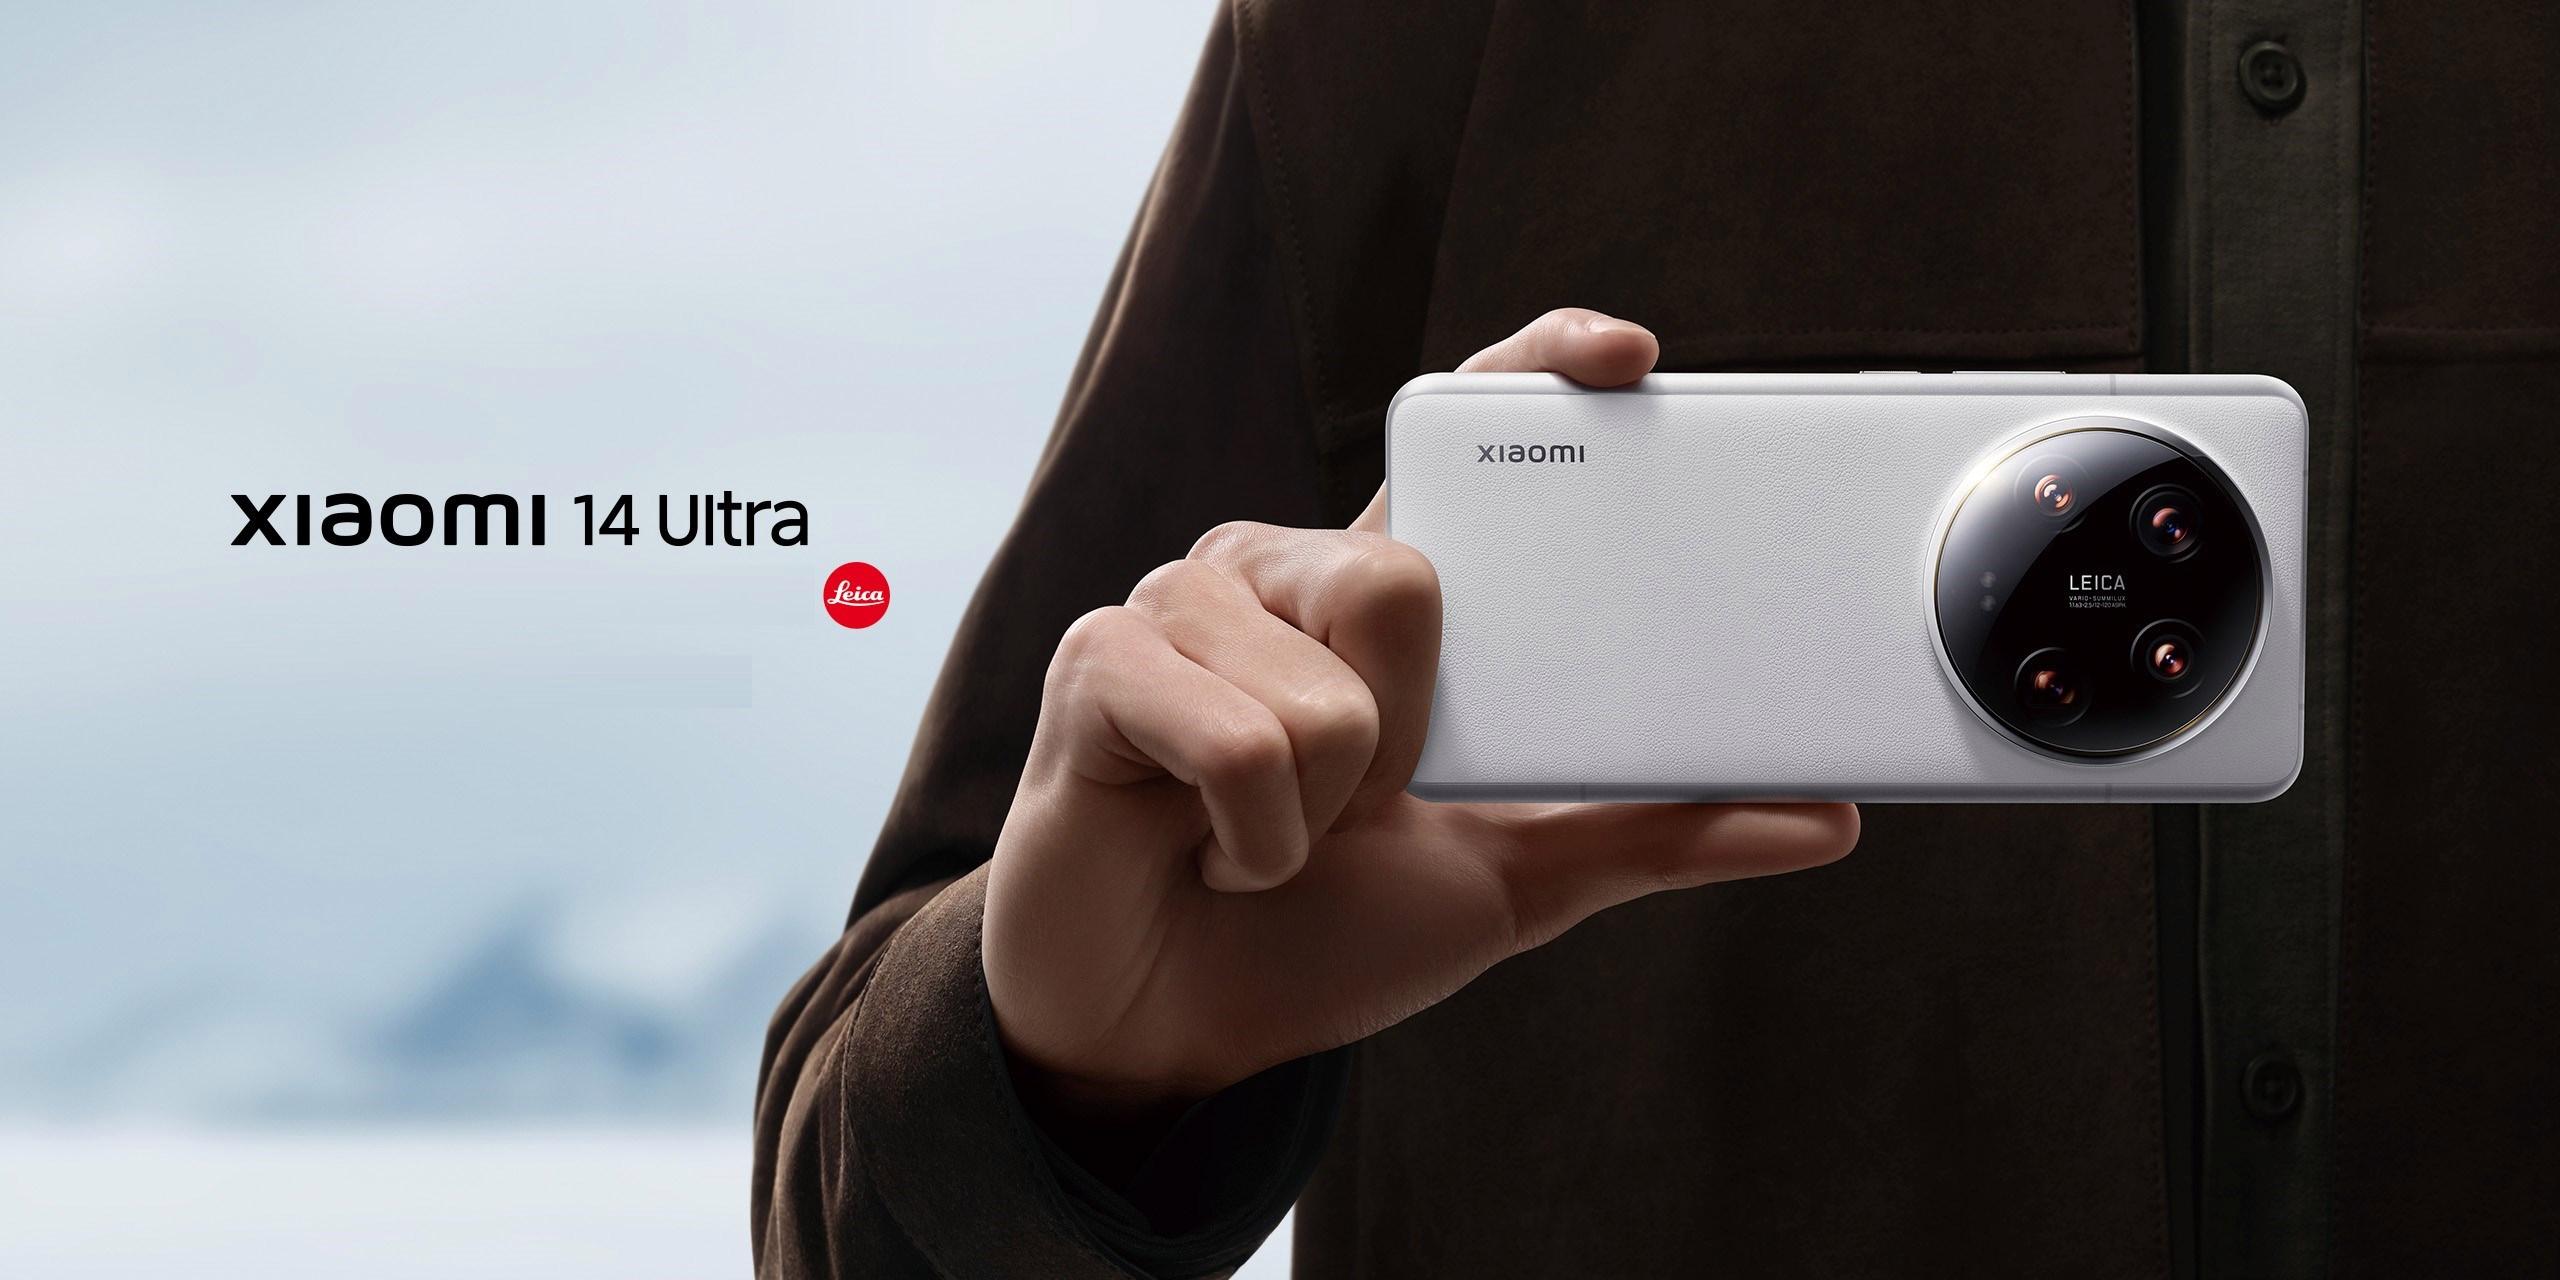 En güçlüsü tanıtıldı: Karşınızda Xiaomi 14 Ultra ve üstün kameraları